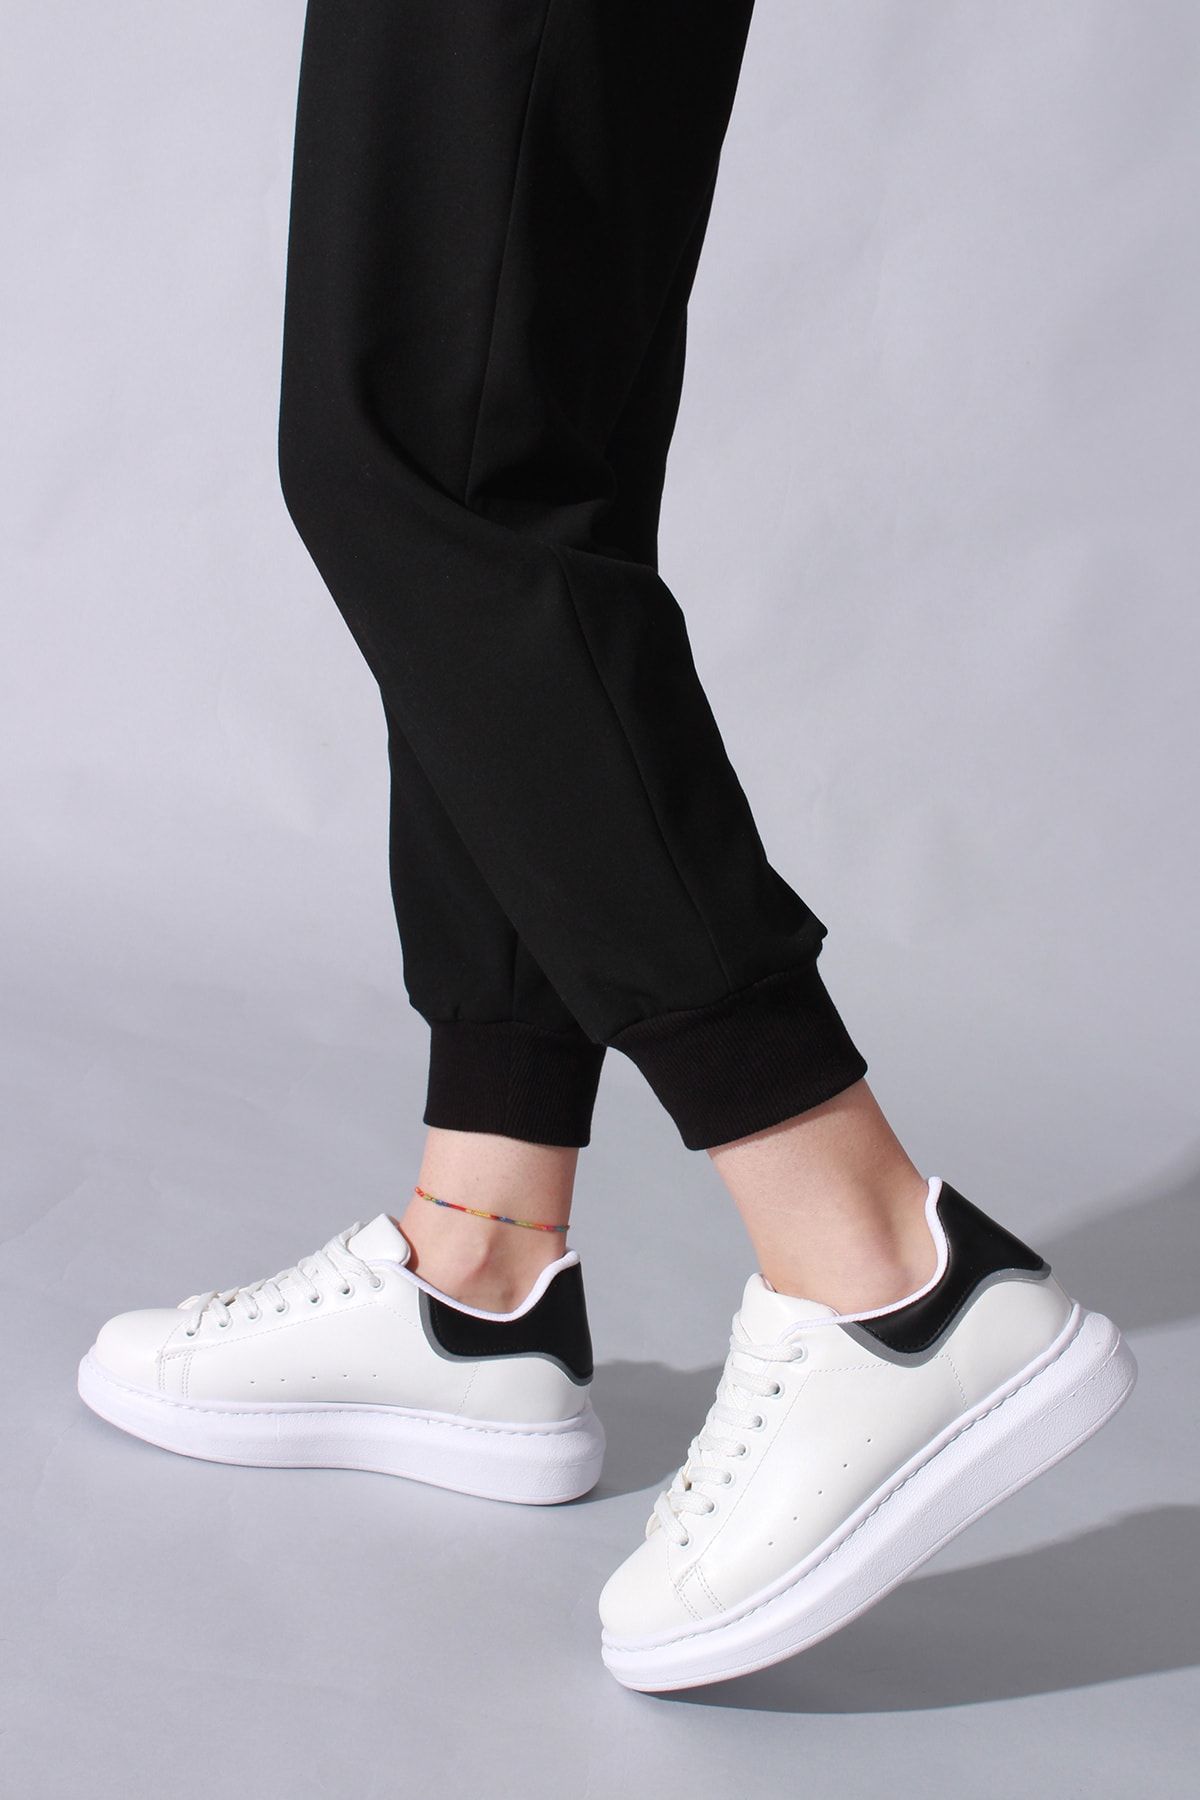 Rovigo Kadın Beyaz Siyah Detaylı Bağcıklı Spor Ayakkabı